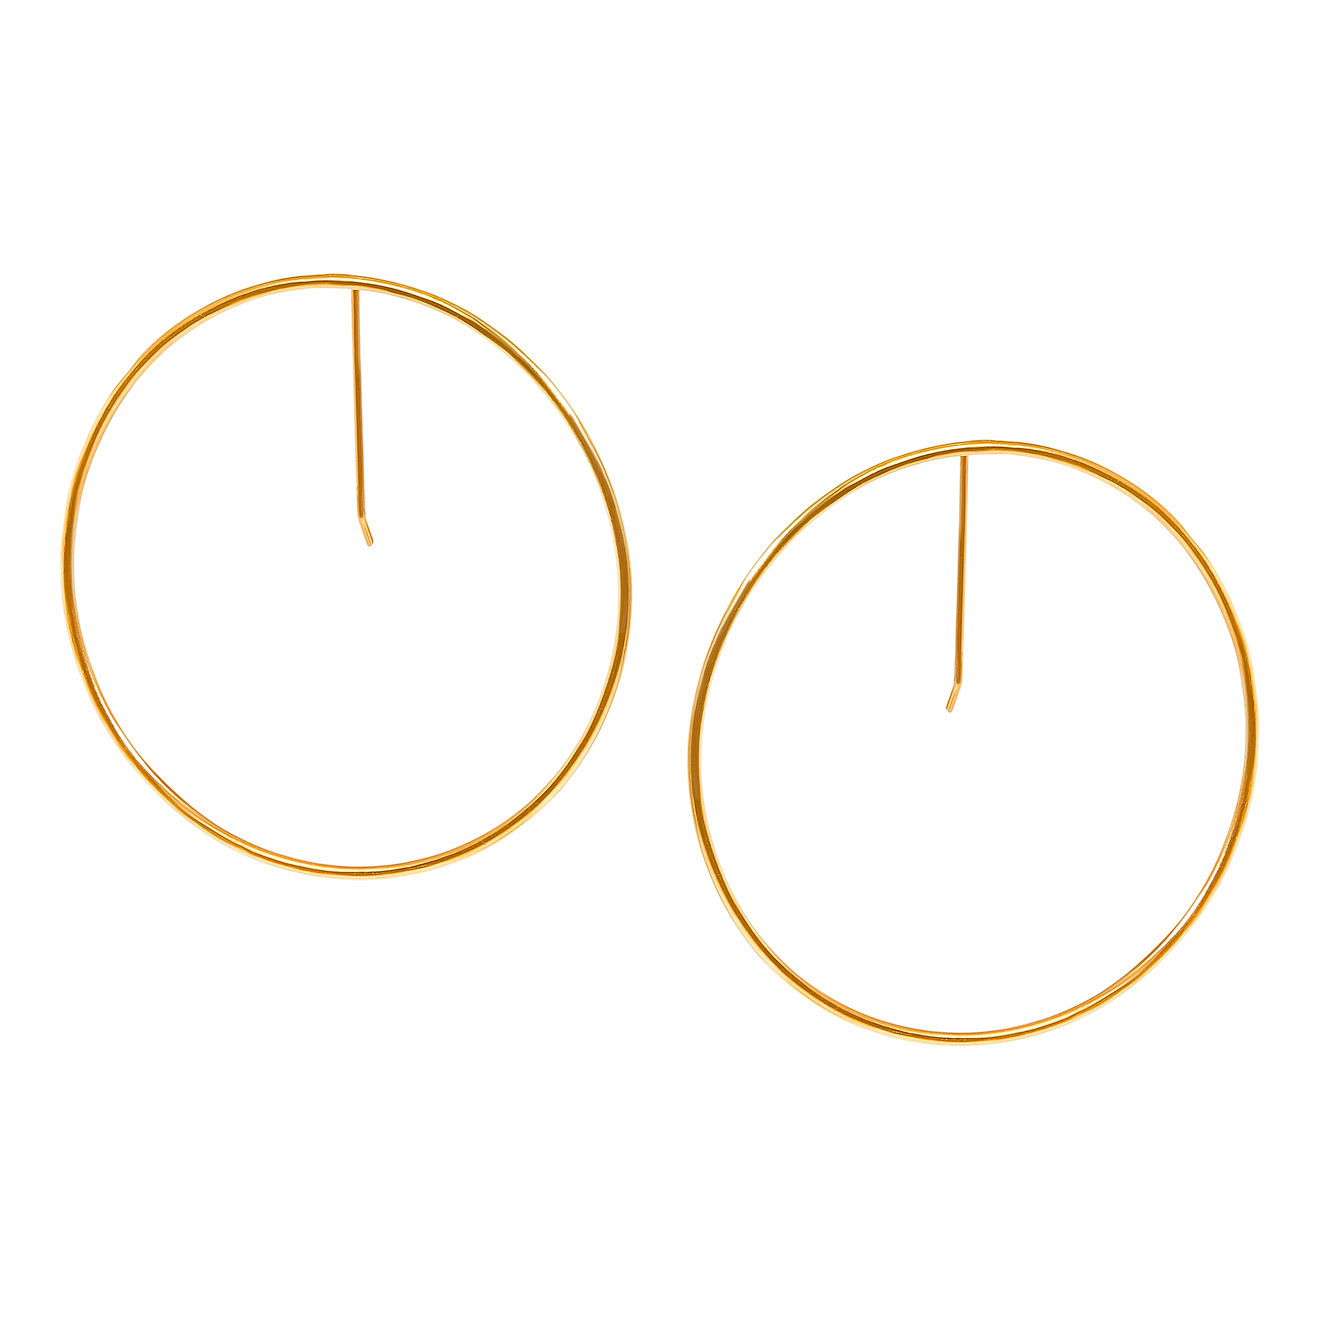 Khoshtrik Большие позолоченные серьги-круги khoshtrik маленькие позолоченные серьги круги из серебра